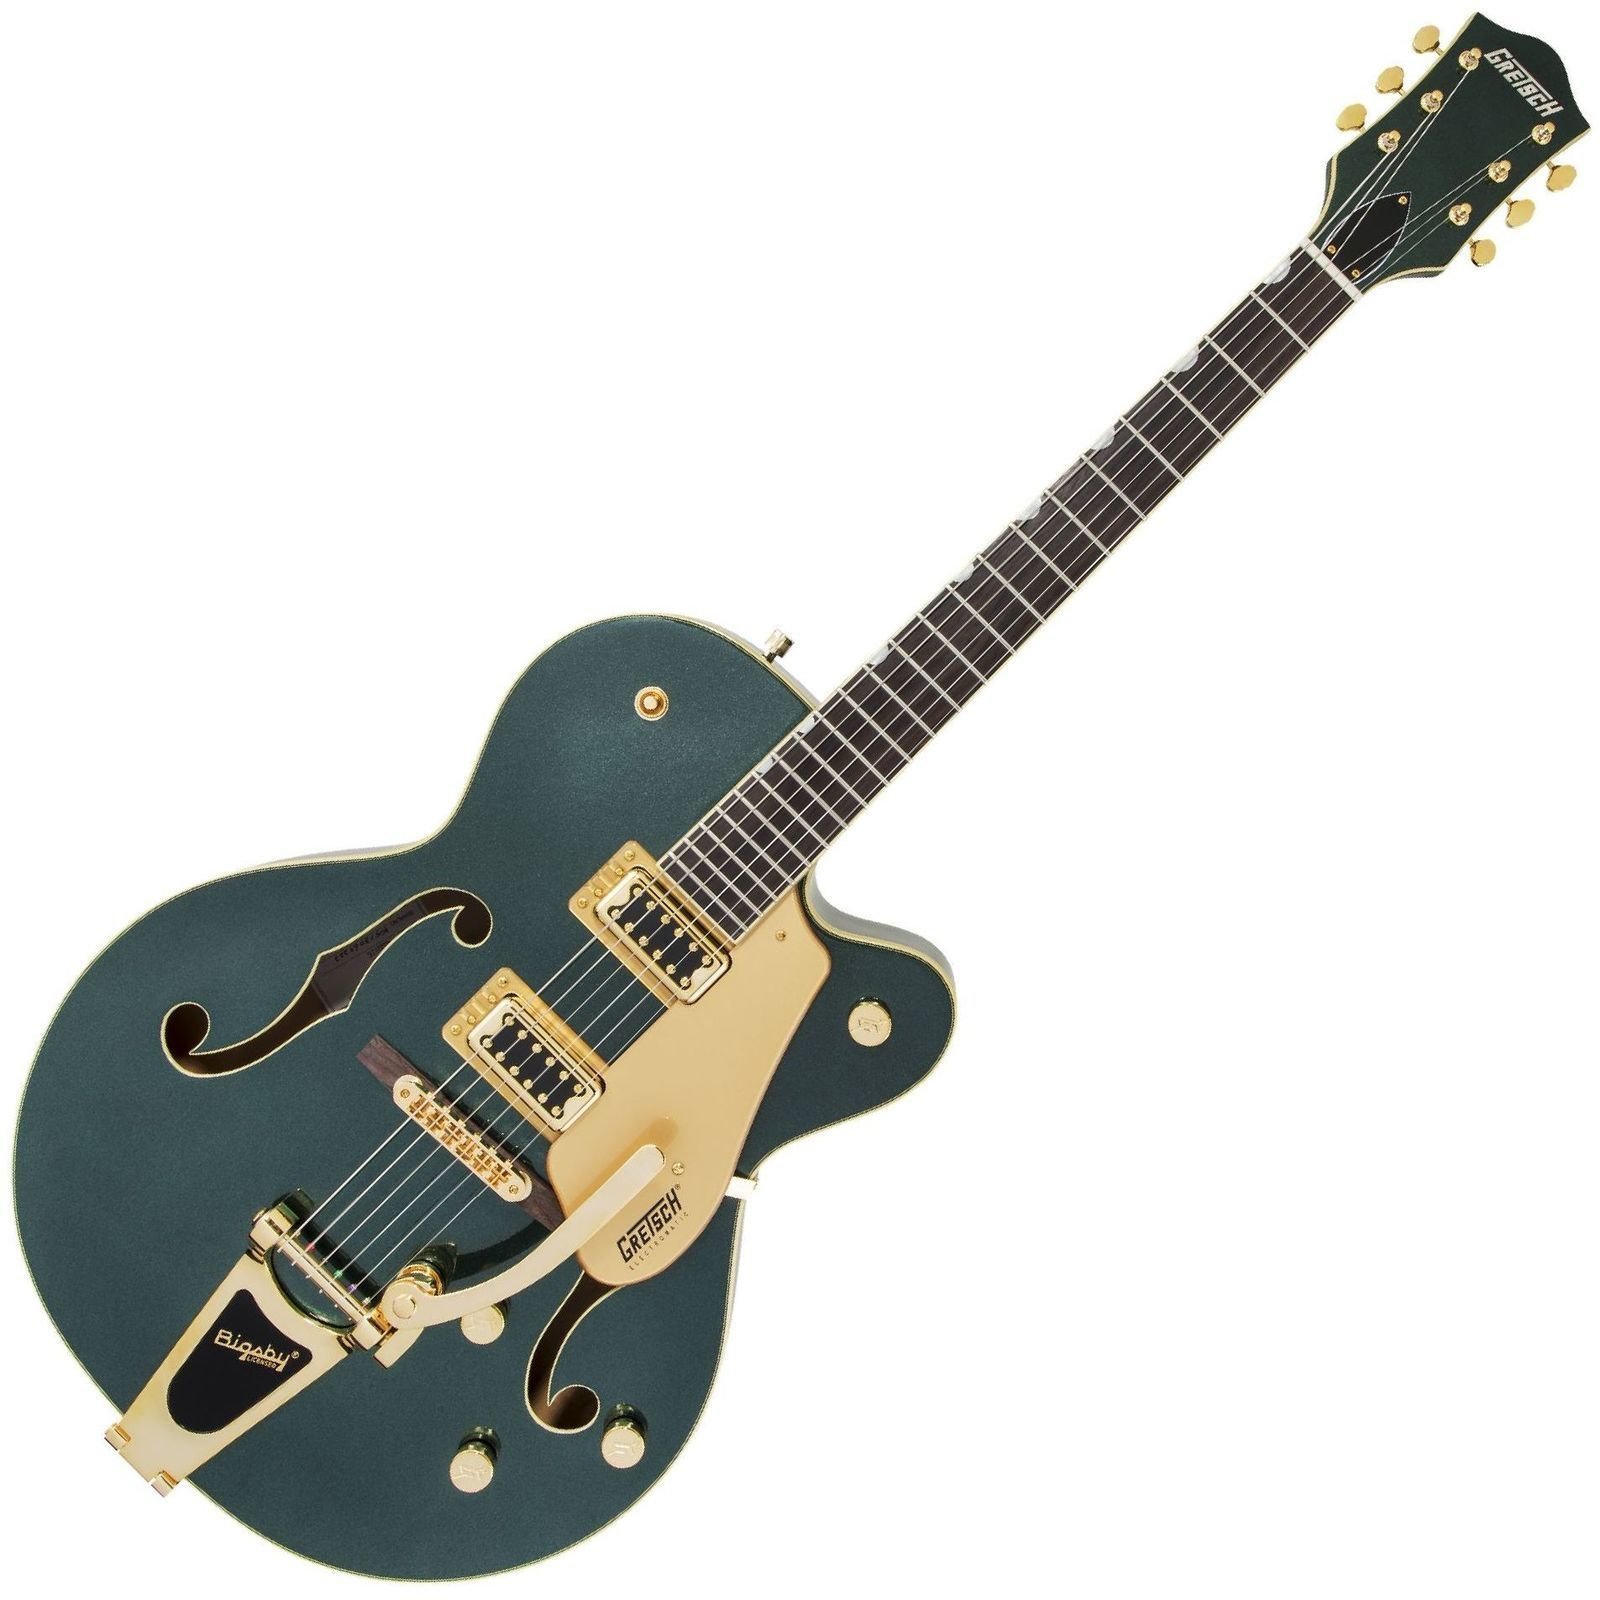 Semiakustická gitara Gretsch G5420TG Limited Edition Electromatic RW Cadillac Green